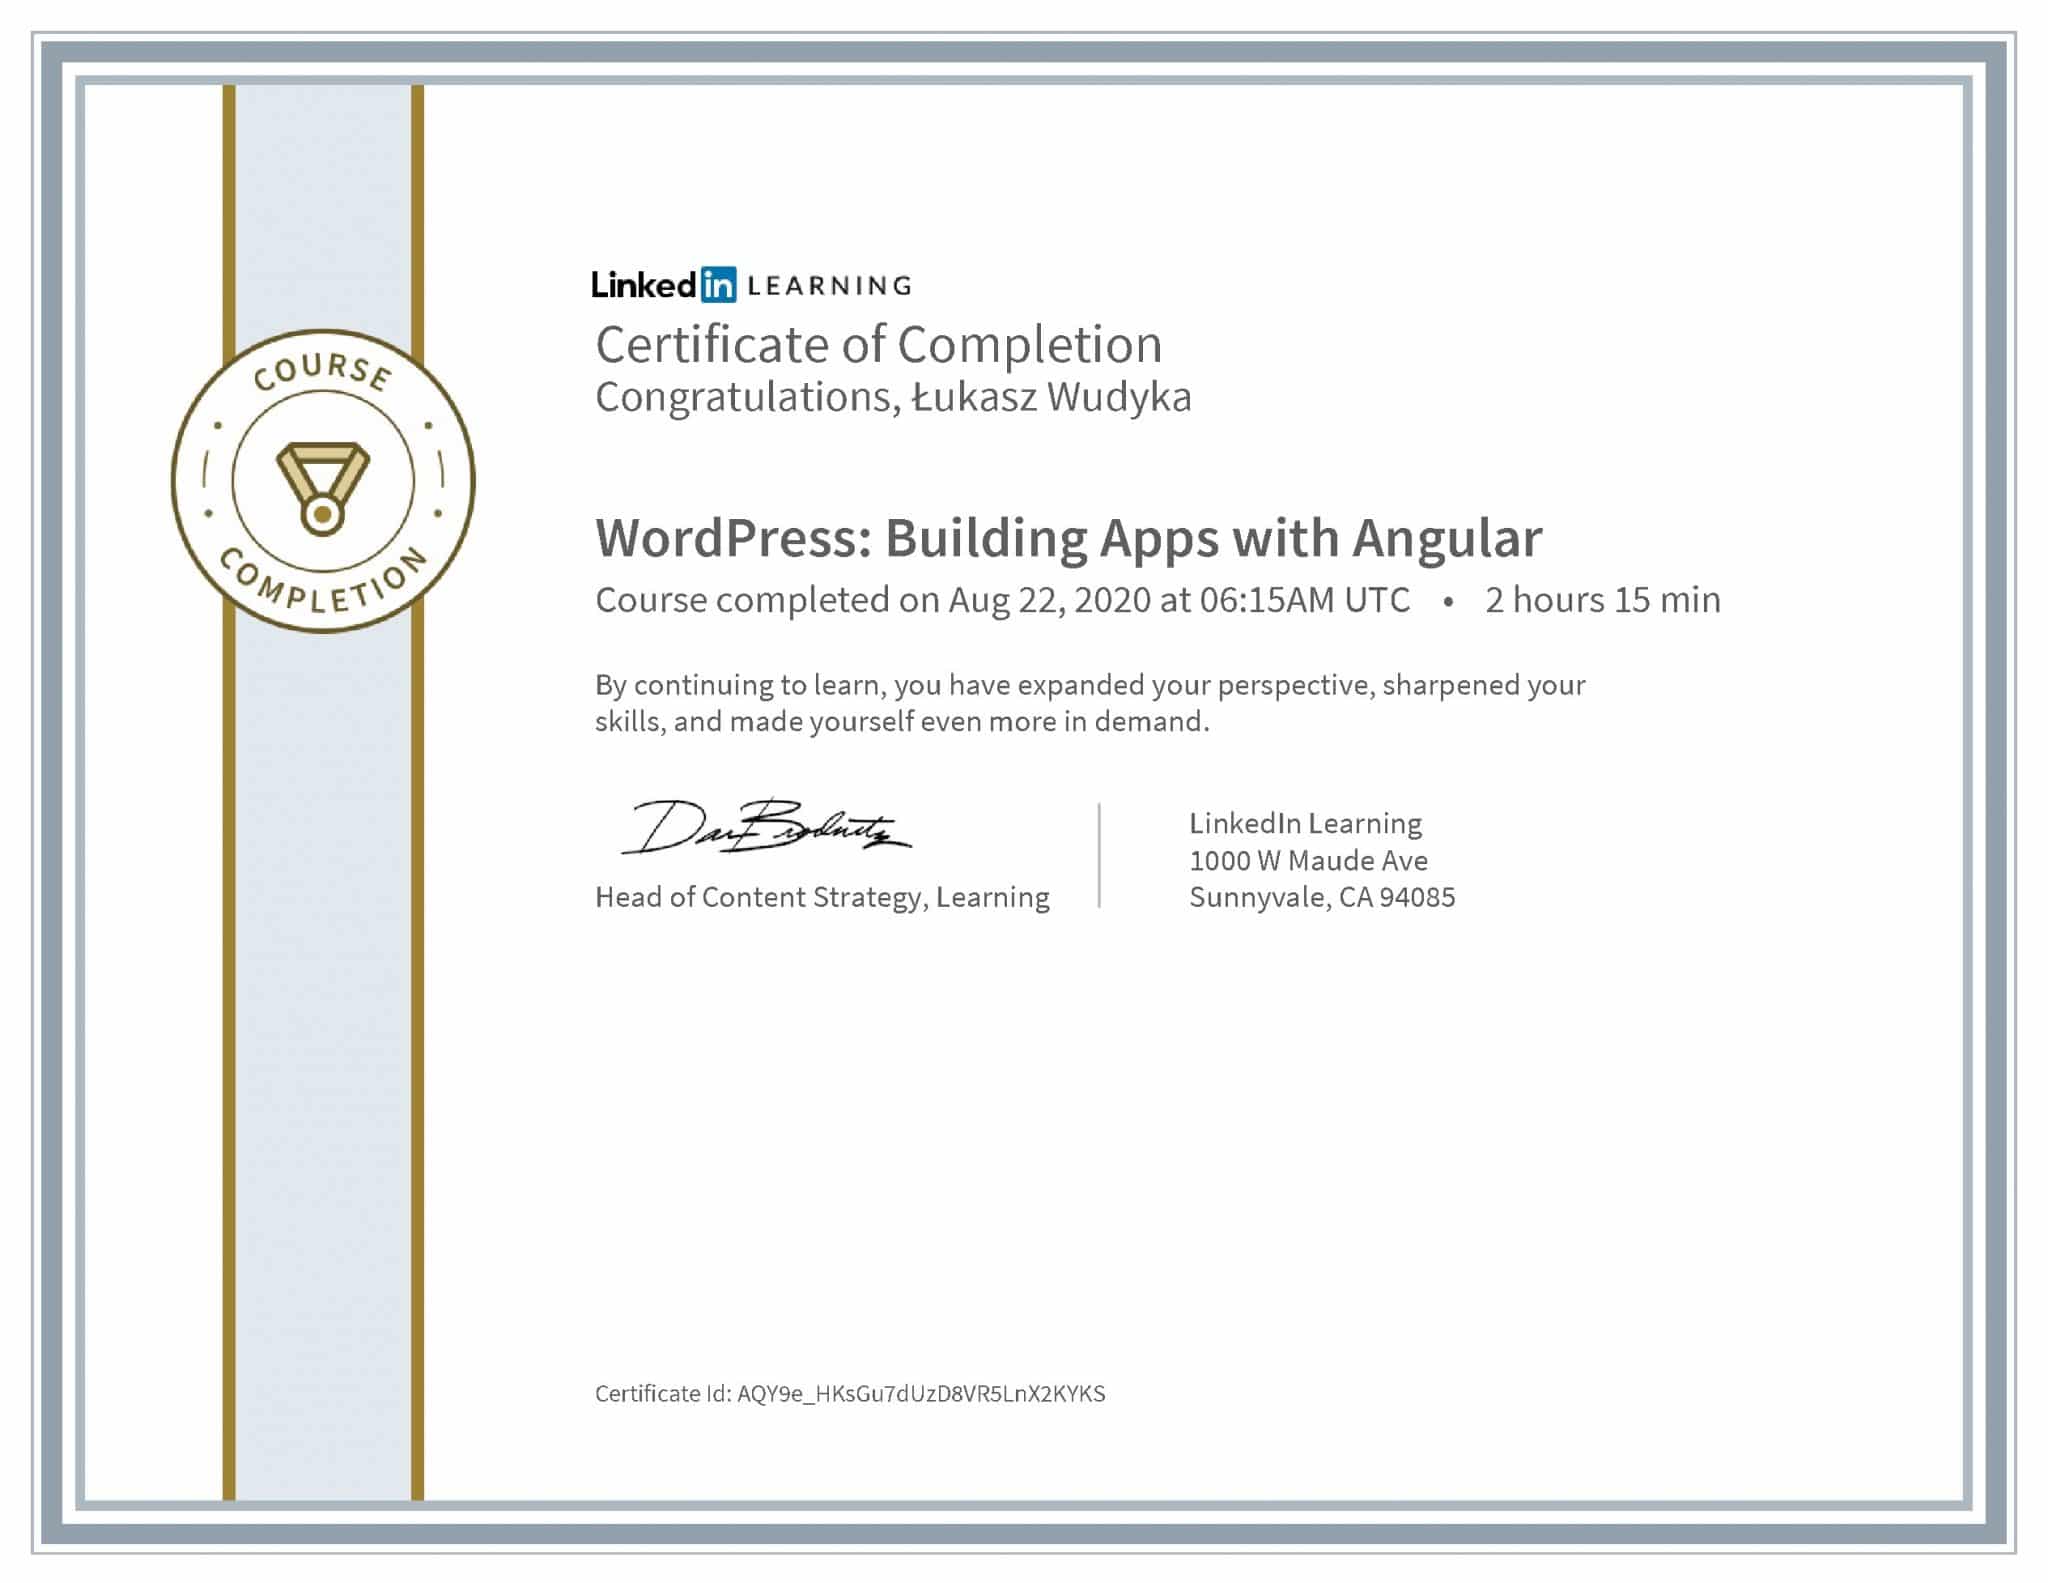 Łukasz Wudyka certyfikat LinkedIn WordPress: Building Apps with Angular